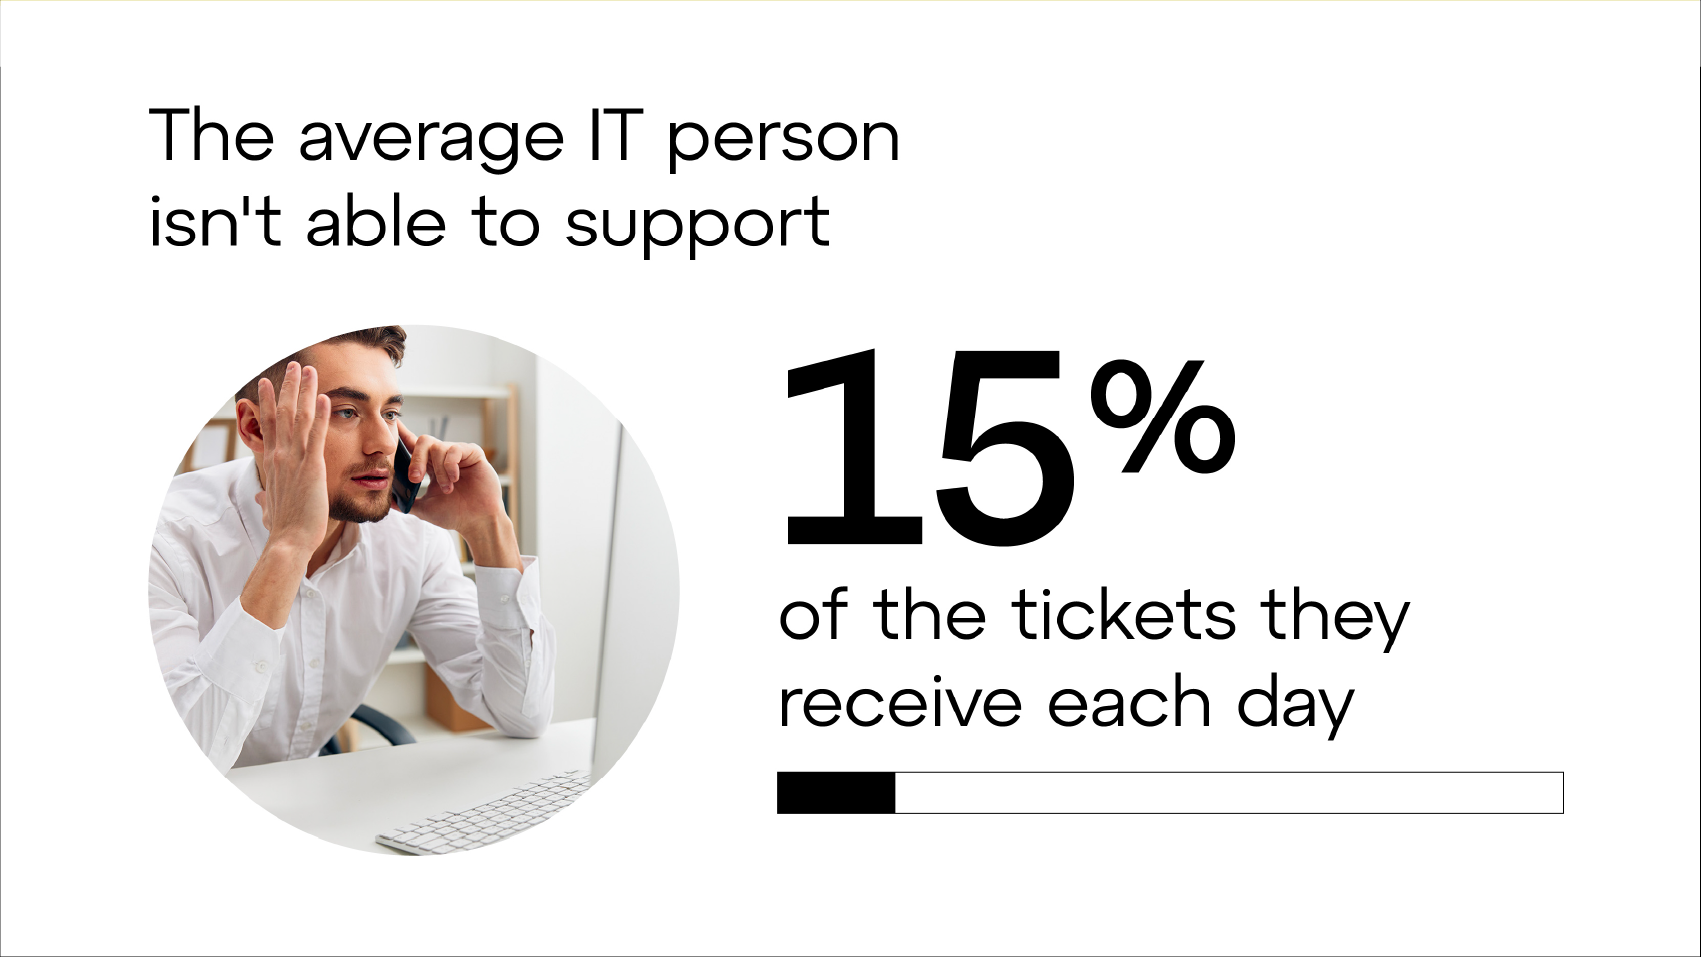 En moyenne, les professionnels de l'informatique doivent laisser de côté 15 % des tickets qu'ils reçoivent tous les jours.